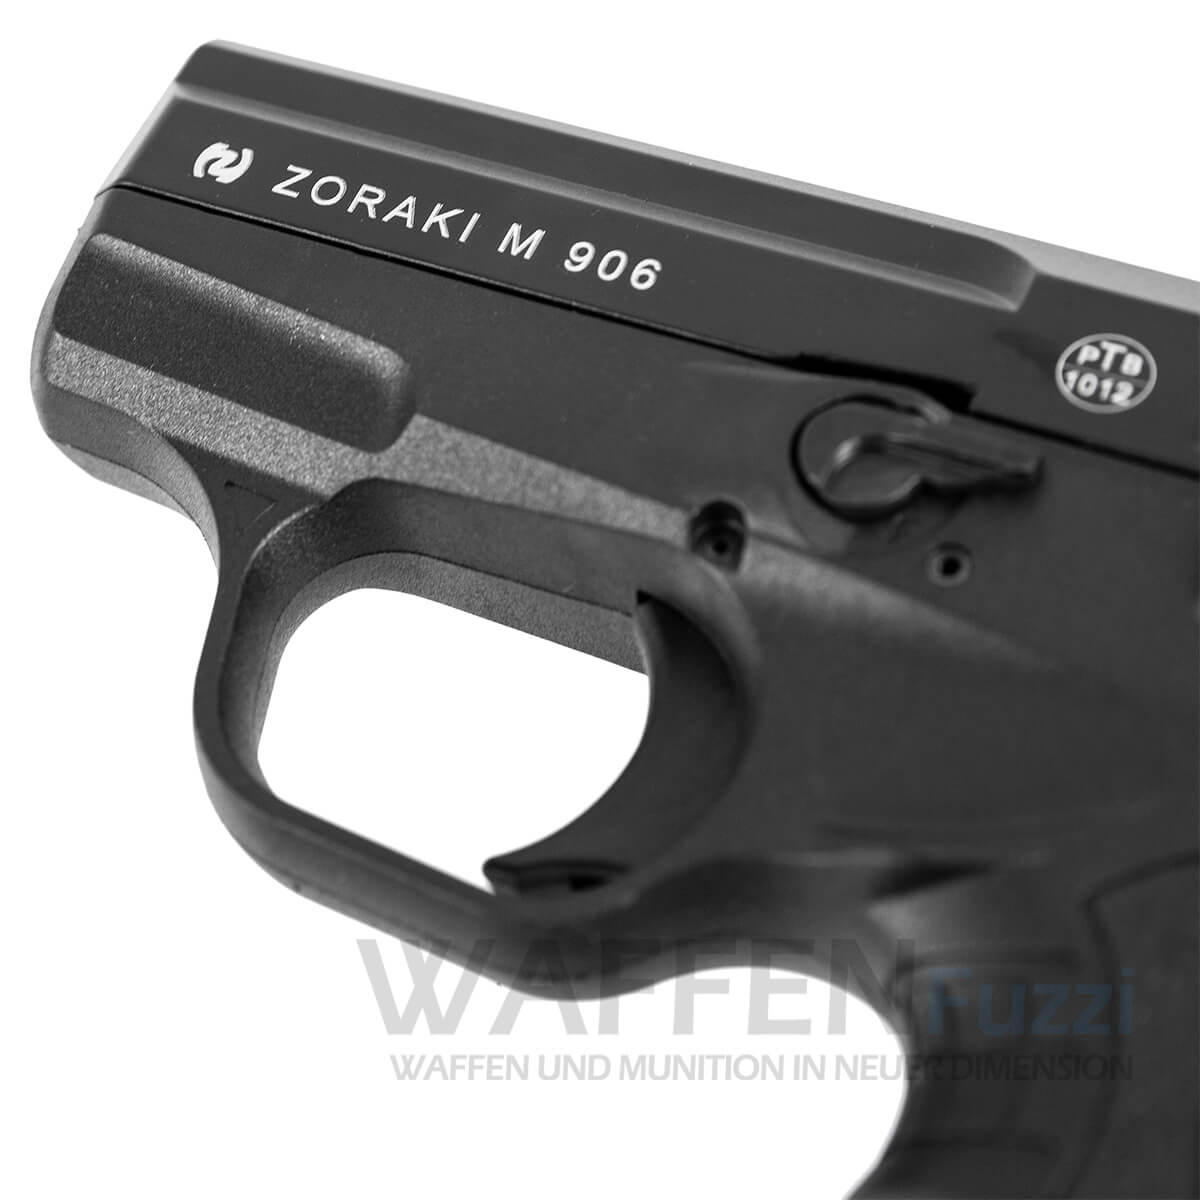 Zoraki 906 Brüniert 9mm PAK 6 Schuss